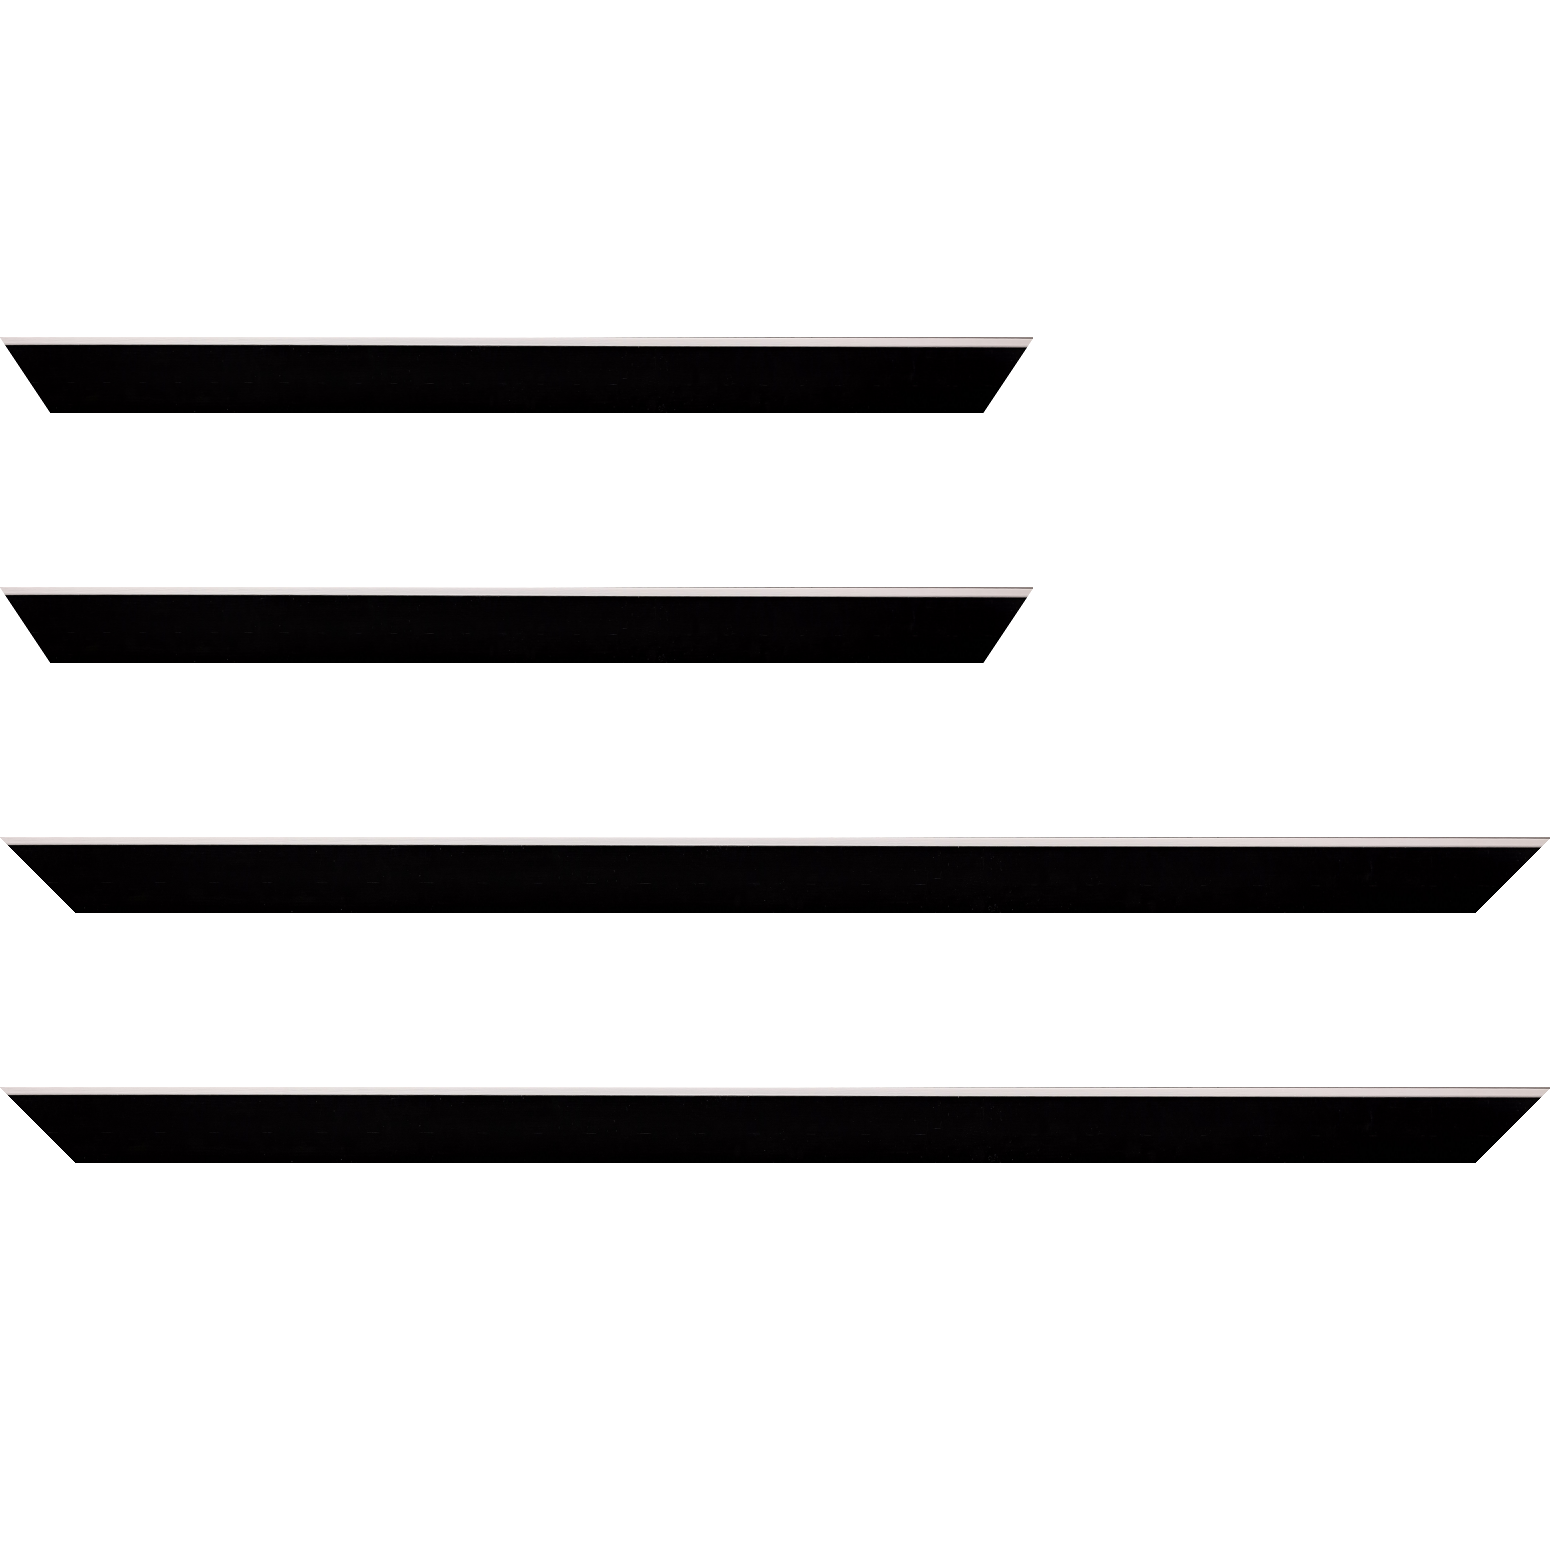 Baguette bois profil arrondi en pente plongeant largeur 2.4cm couleur noir satiné,veine du bois  apparent (pin) , angle du cadre extérieur filet argent chromé - 59.4x84.1